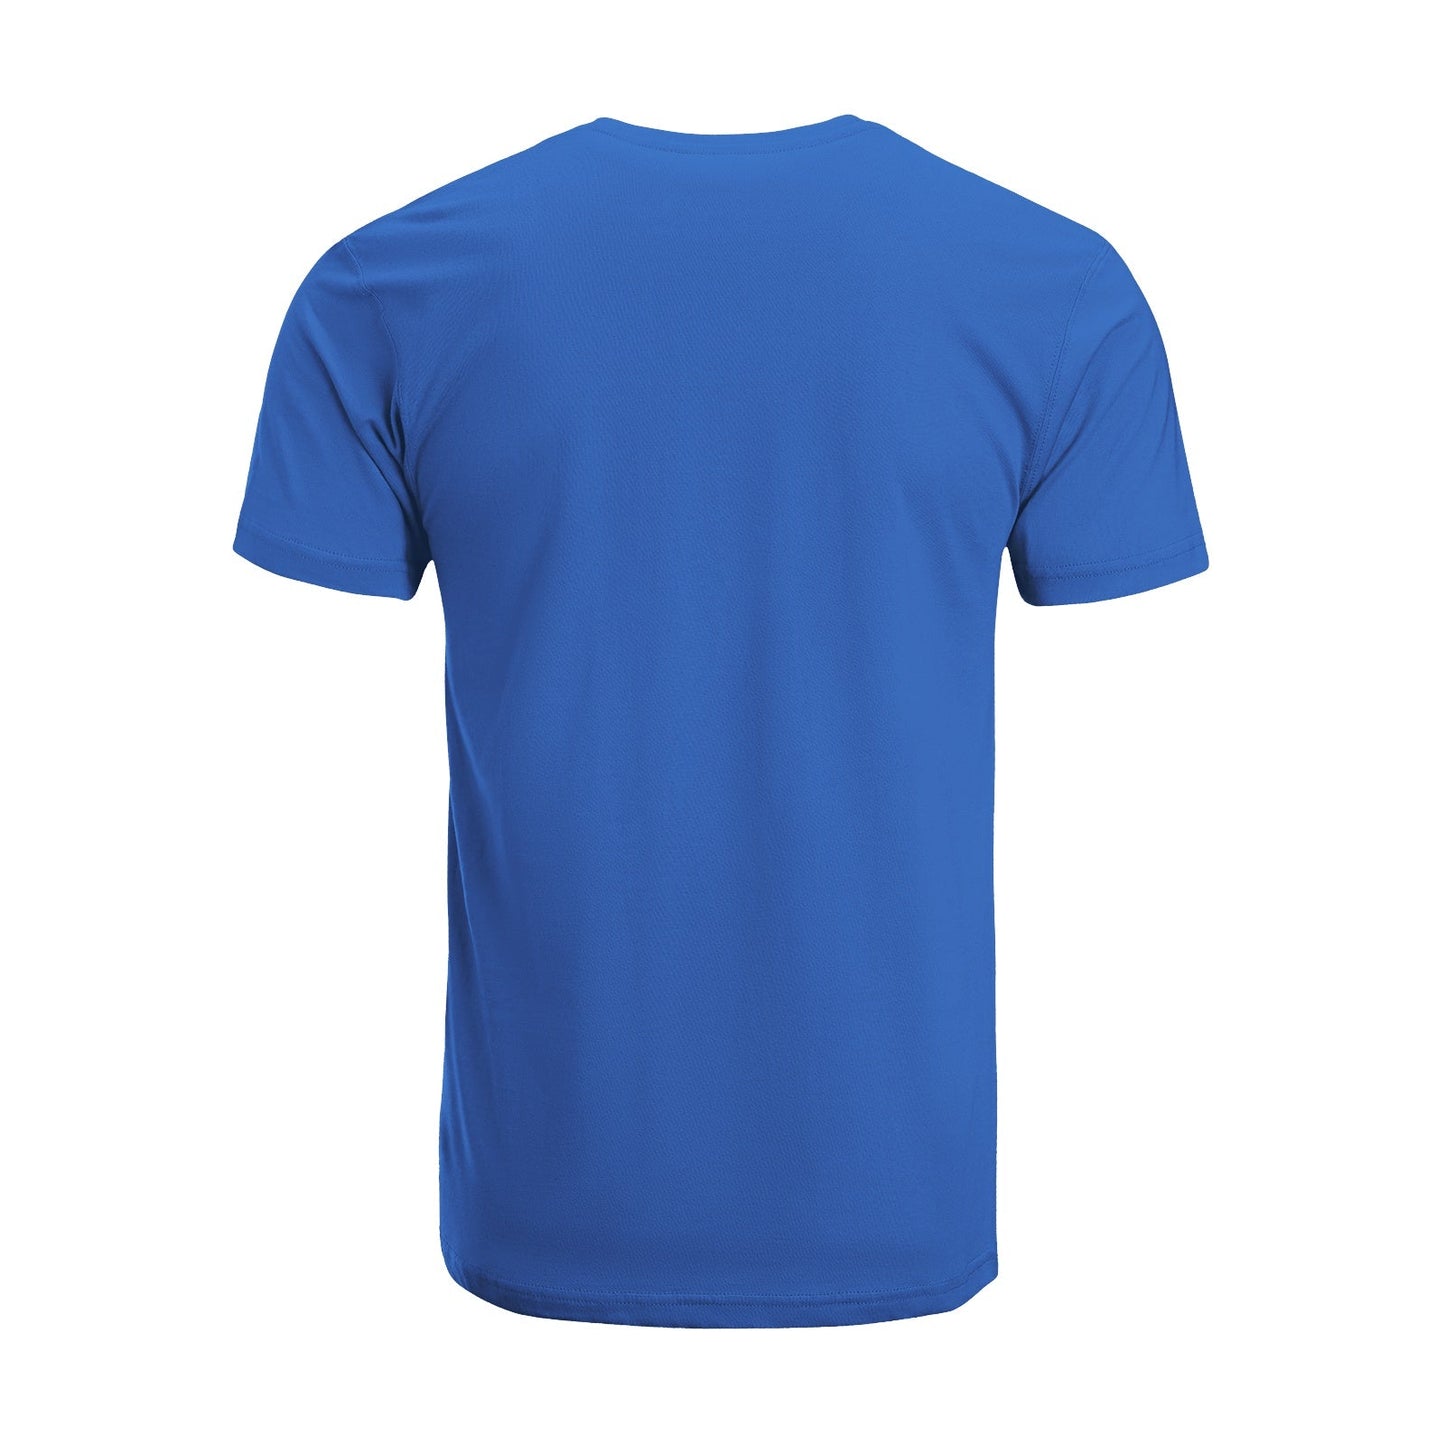 Unisex Short Sleeve Crew Neck Cotton Jersey T-Shirt TRUCK 08